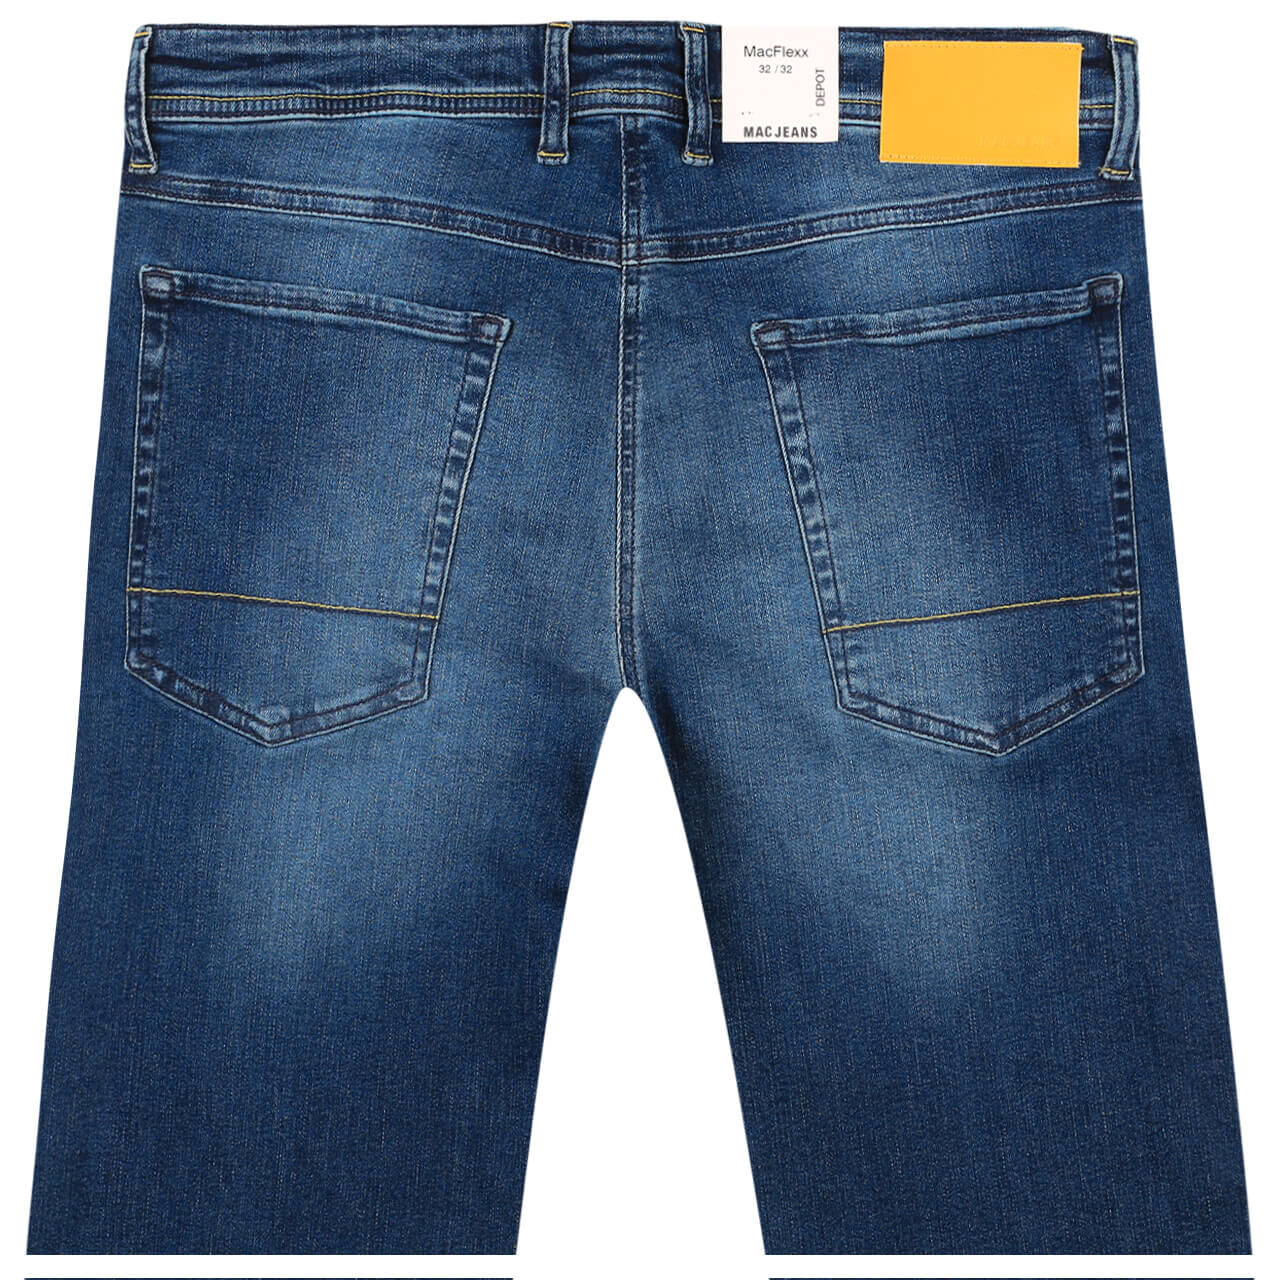 MAC Jeans Flexx für Herren in Mittelblau angewaschen, FarbNr.: H552